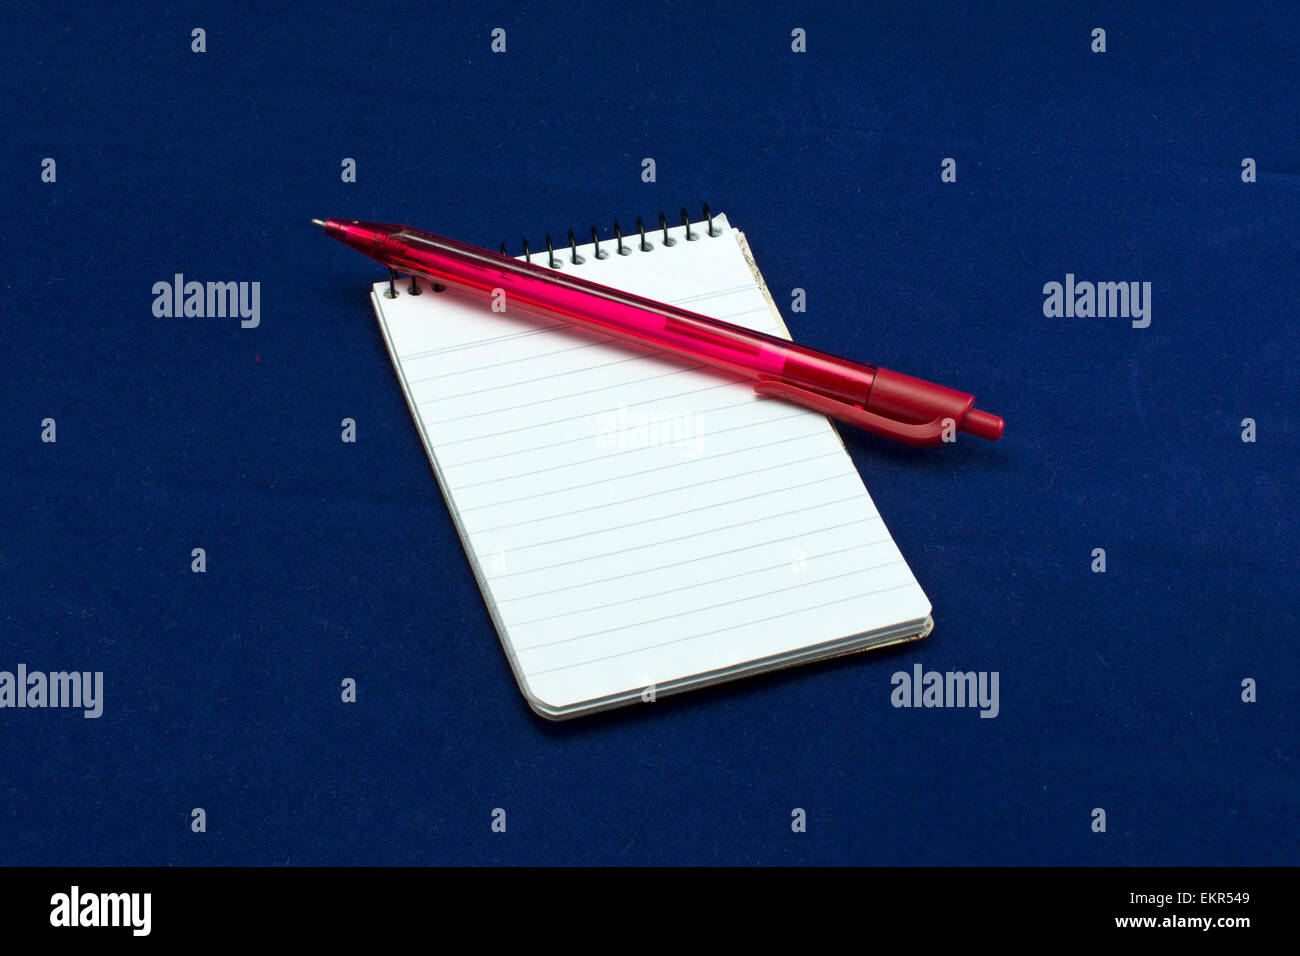 Un carnet de notes avec un stylo-bille rouge Banque D'Images